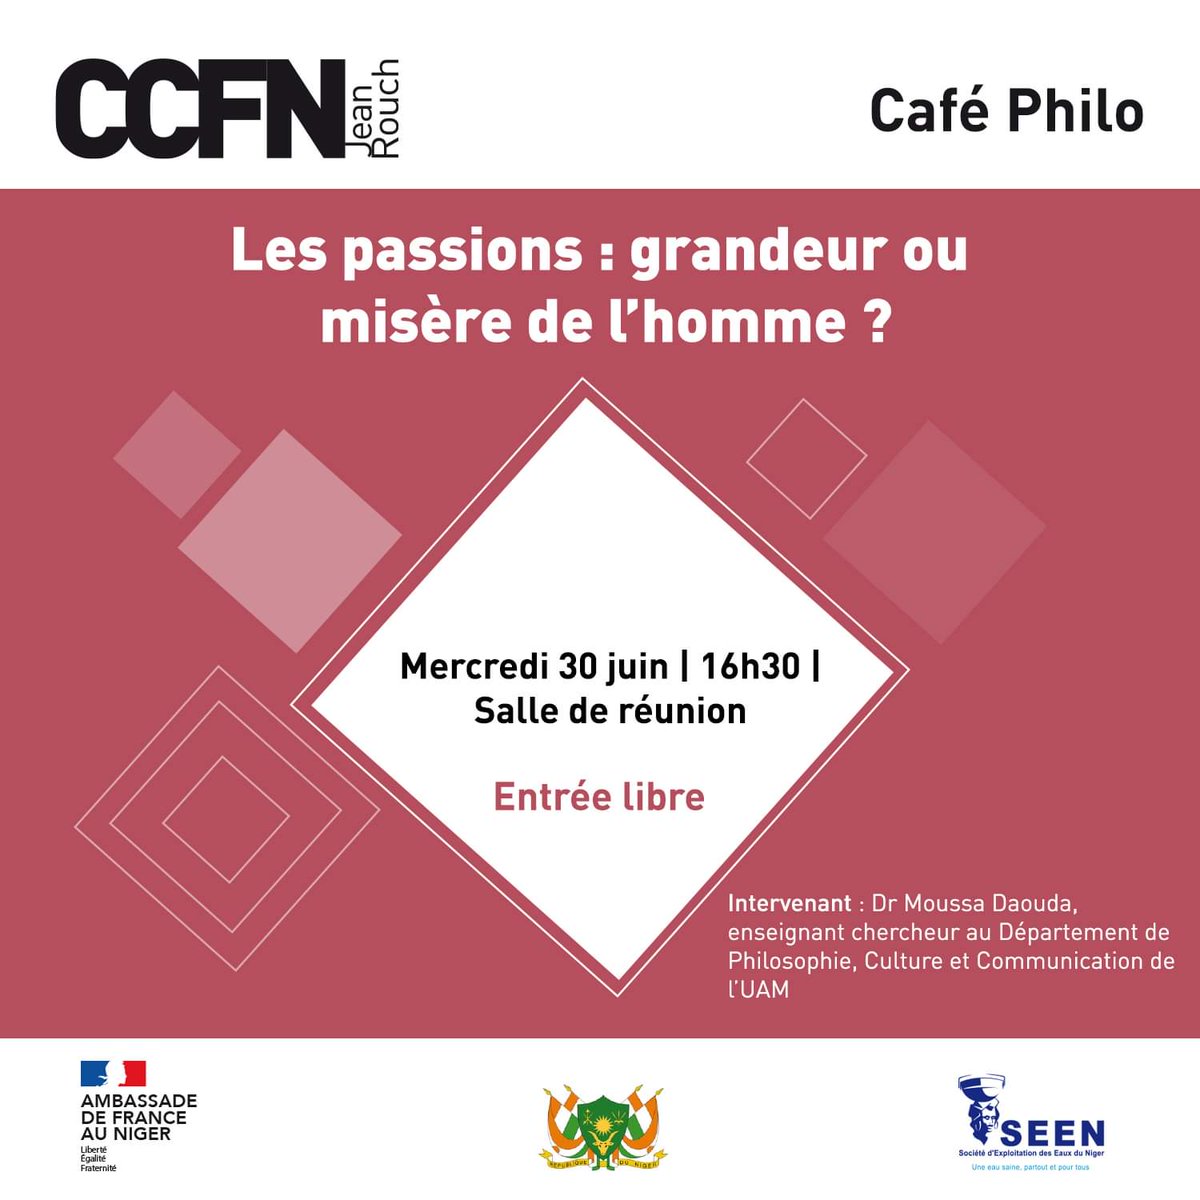 Rendez-vous demain pour le dernier #CaféPhilo de la saison, autour du thème « Les passions : grandeur ou misère de l'homme ? », animé par le Dr Moussa Daouda, enseignant chercheur au Département de #Philosophie, Culture et Communication de l’#UAM.

➡️ Mercredi 30/06 à 16h30